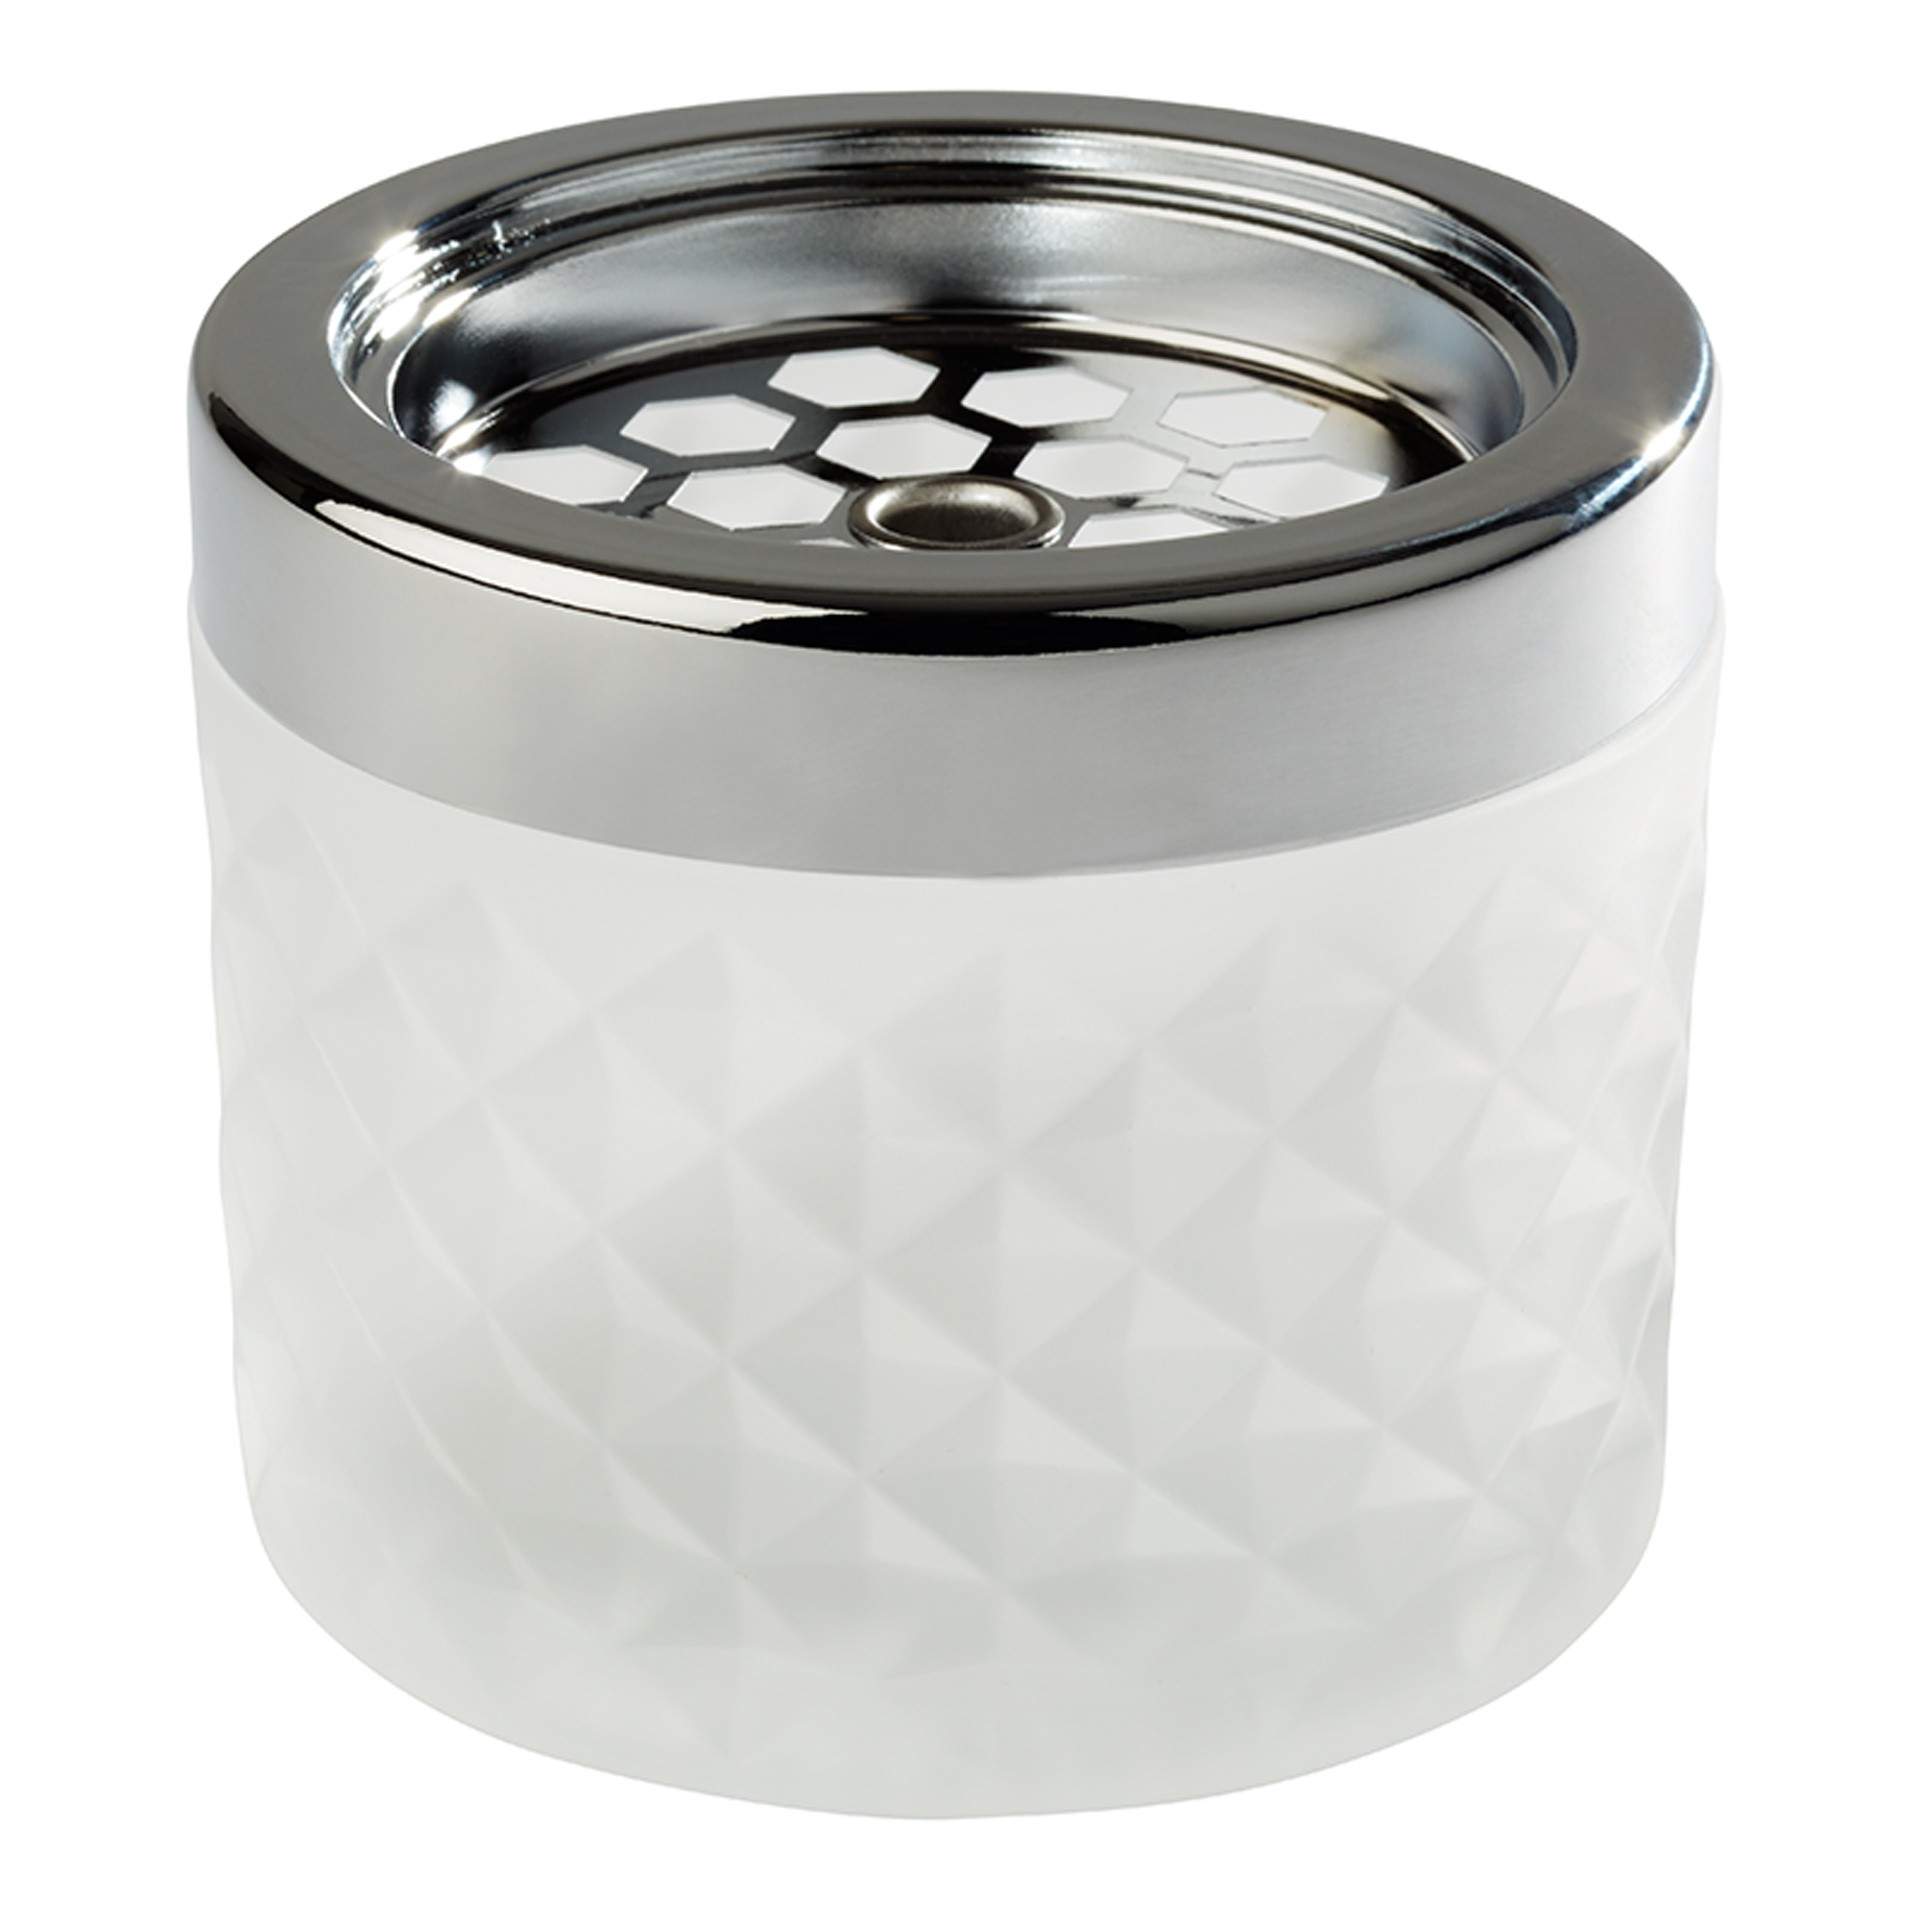 Wind-Aschenbecher - Glas gefrostet - weiß - rund - Abm. 8,0 cm - Ø 9,5 cm - Glas - 585-B